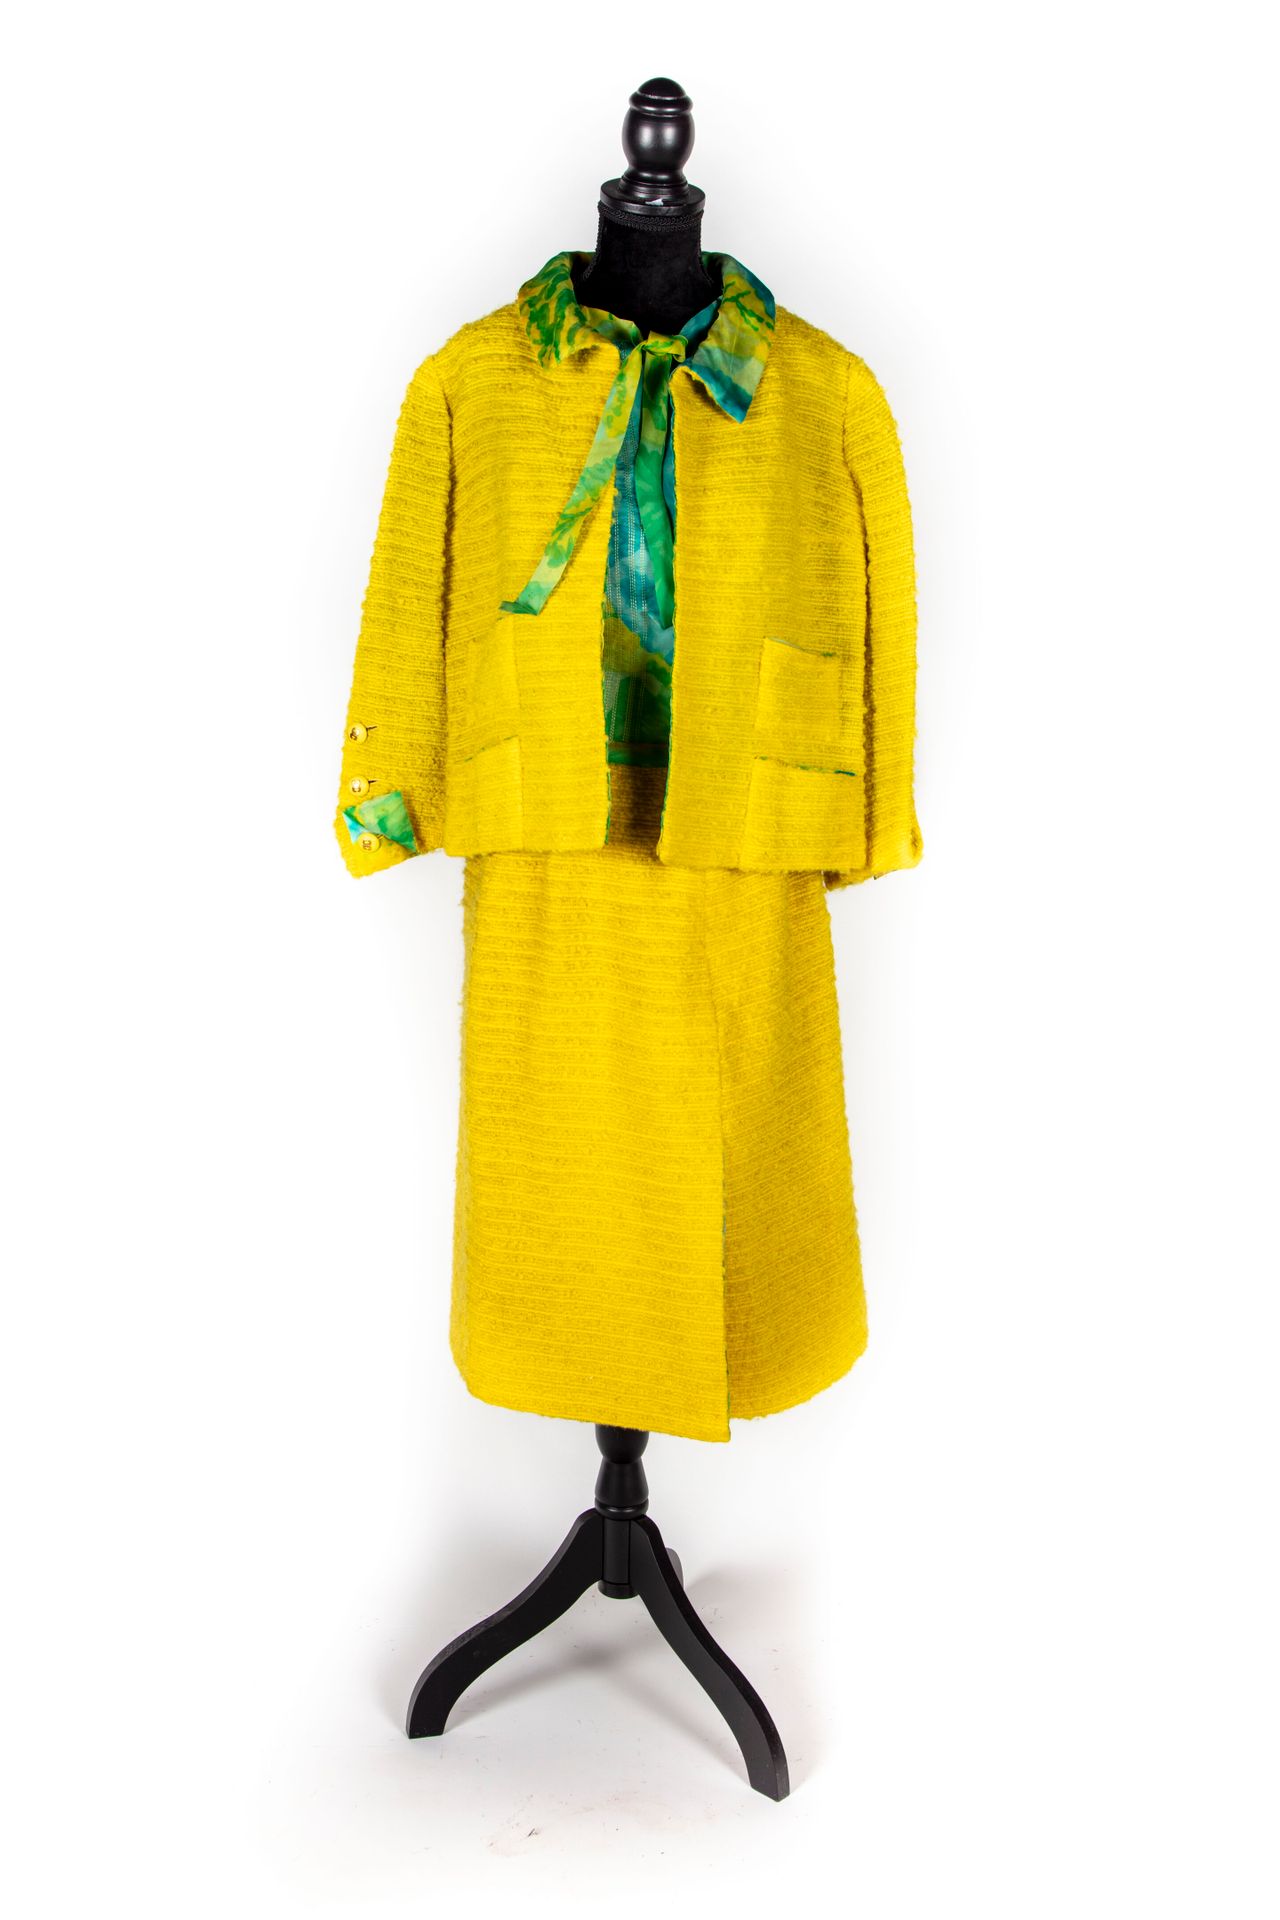 CHANEL 香奈儿 - 巴黎

高级时装系列

黄色绗缝羊毛呢裙套装，绿色丝绸衬里，无袖上衣。

有签名和编号的19935 - 约1970/1975年

状况&hellip;